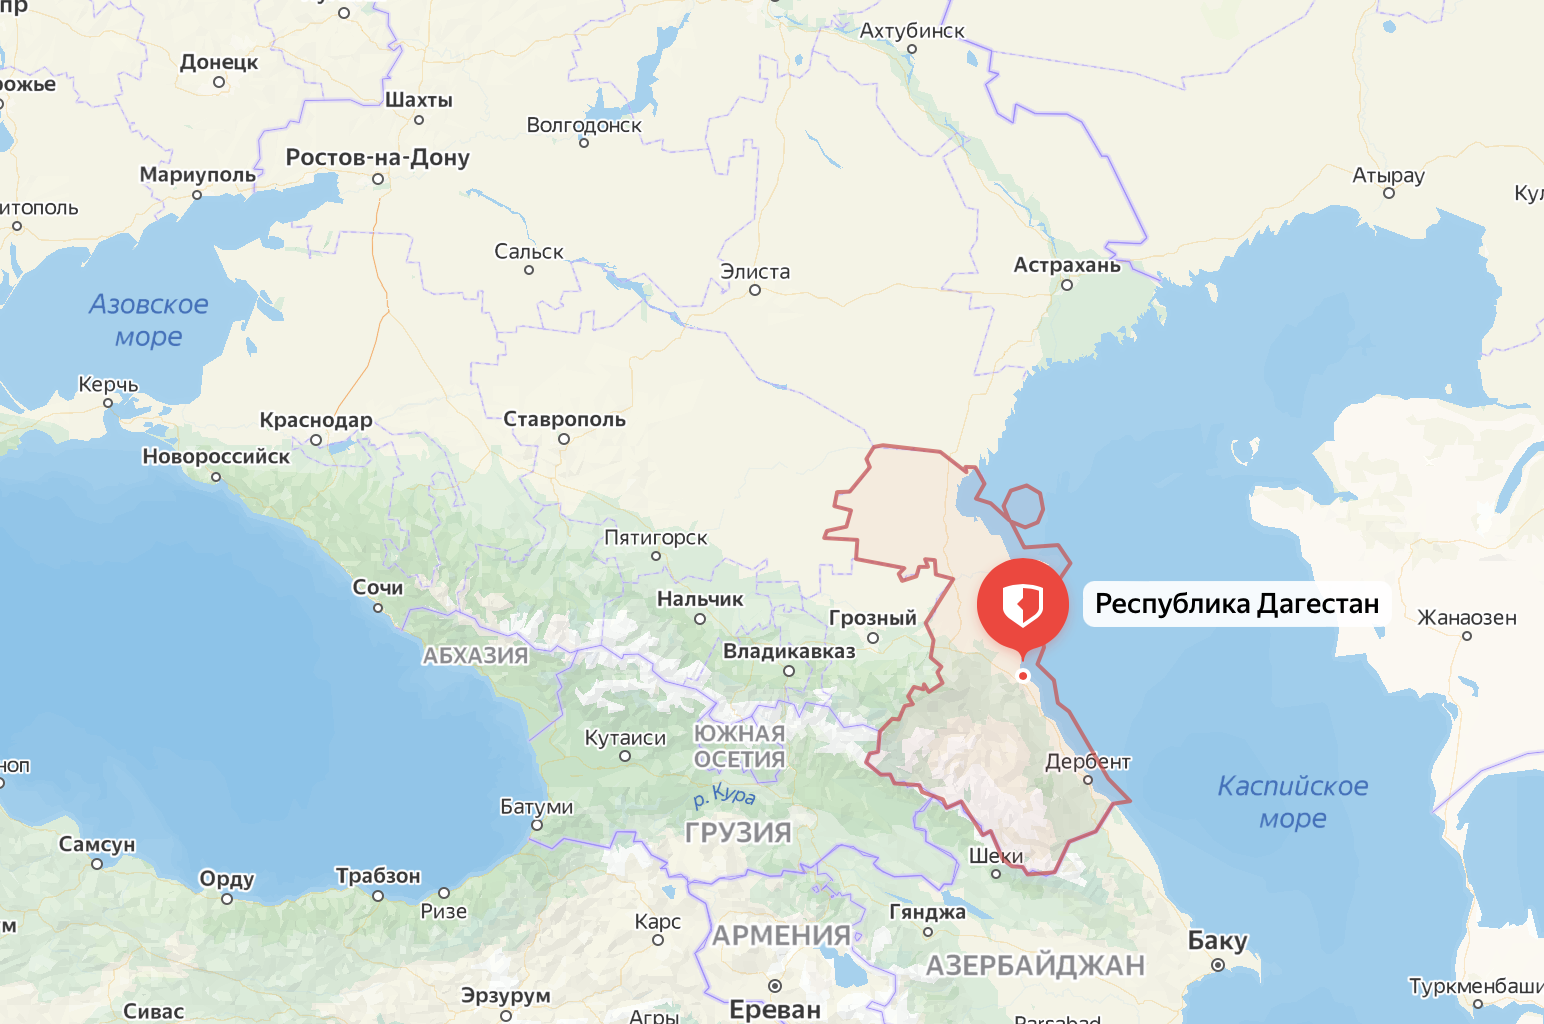 Дагестан: что нужно знать перед поездкой, что смотреть